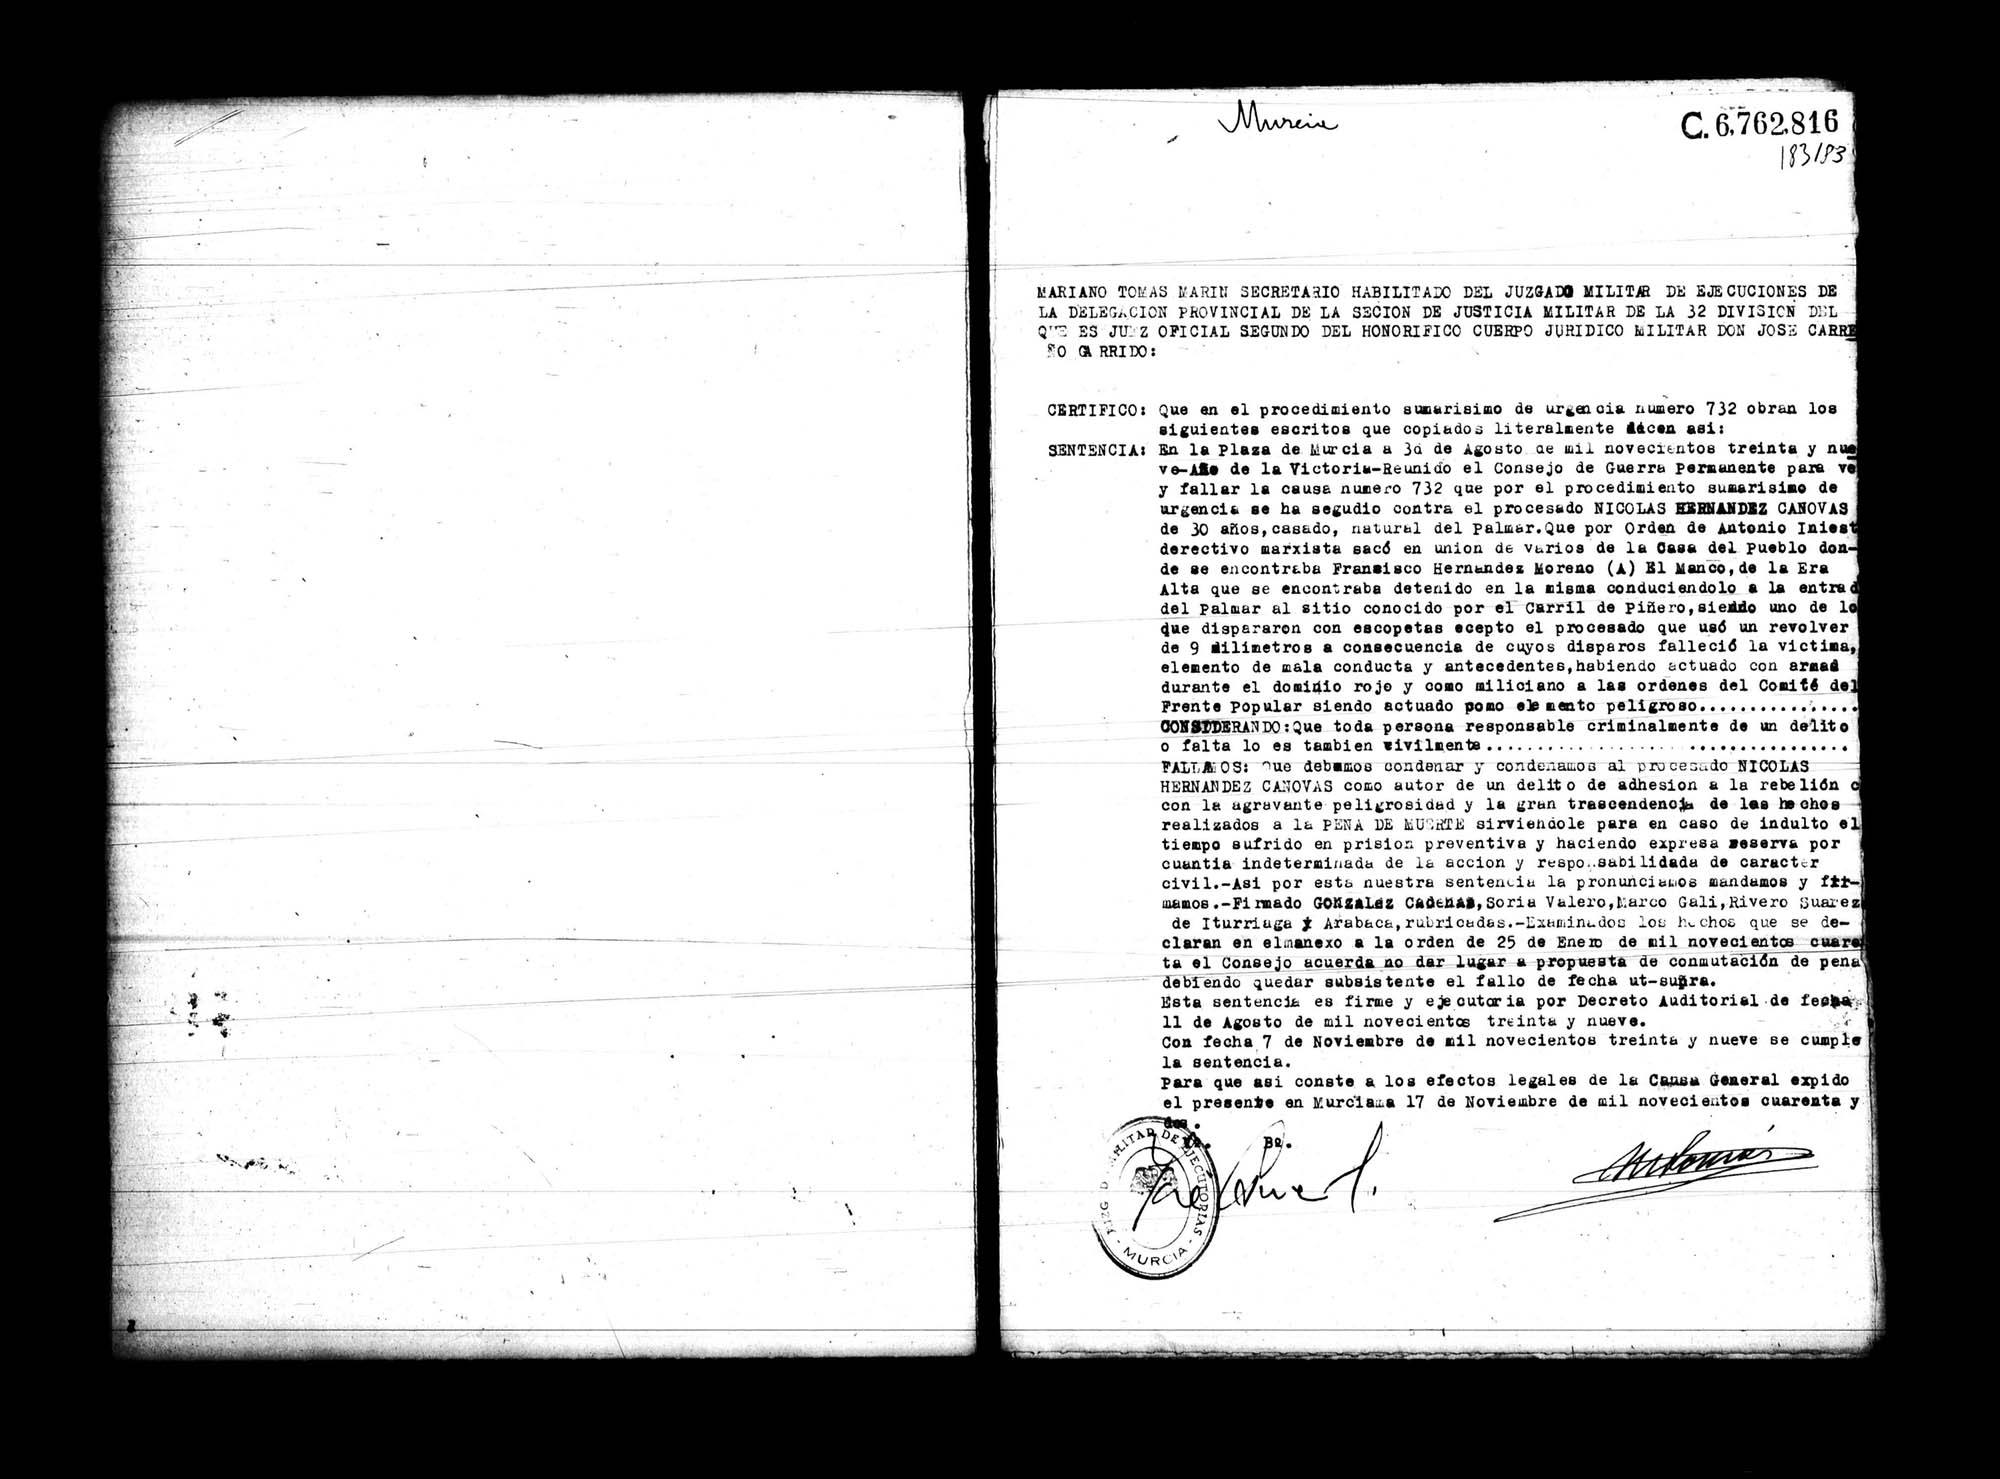 Certificado de la sentencia pronunciada contra Nicolás Hernández Cánovas, causa 732, el 30 de agosto de 1939 en Murcia.